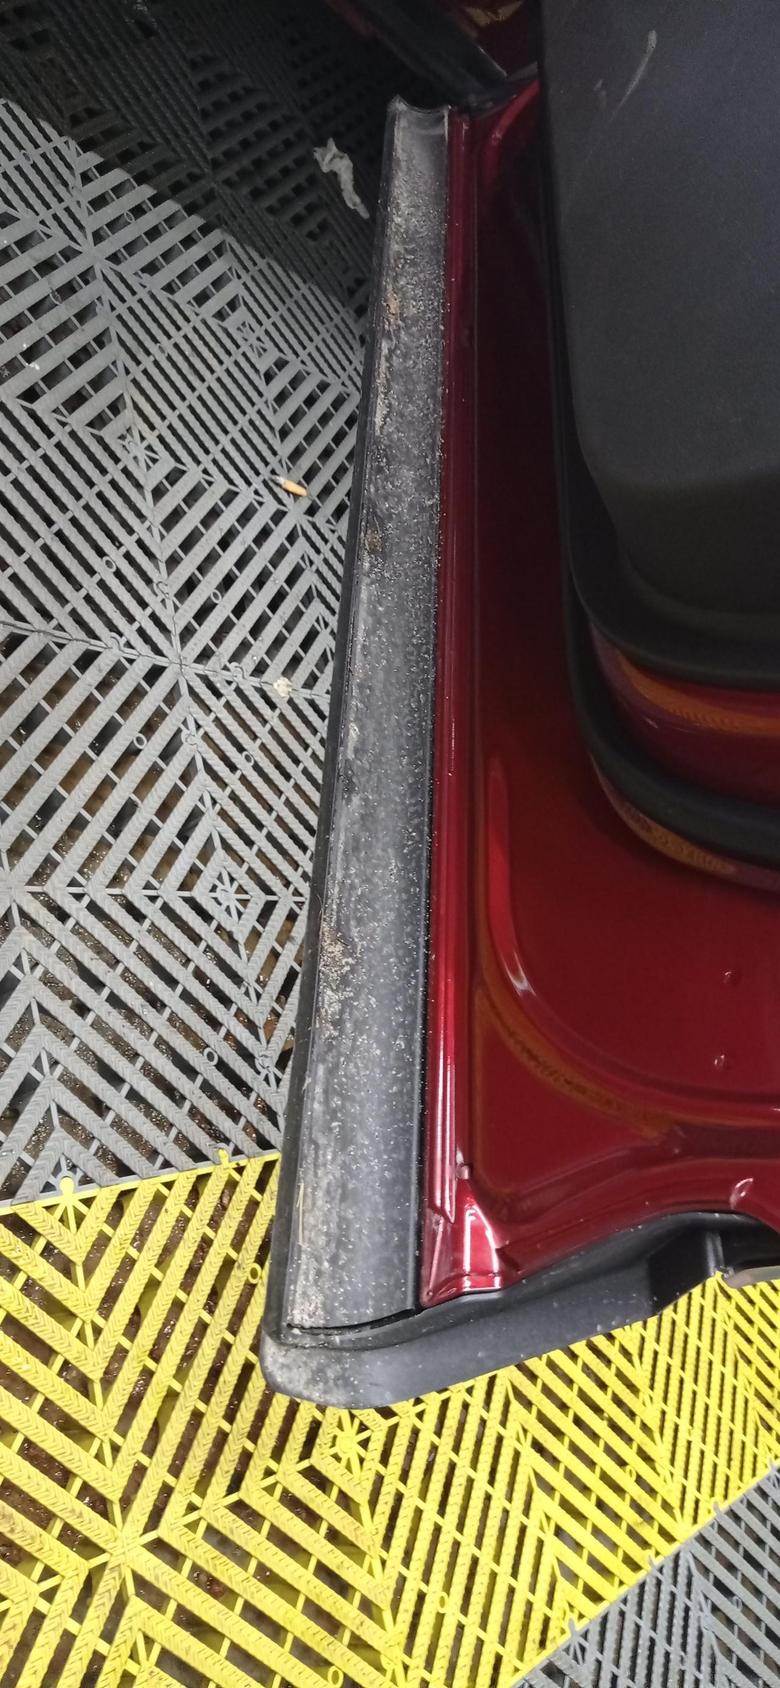 昂科威s 车门下脏死了，听说装密封条可以解决。有车友试过吗，效果如何？